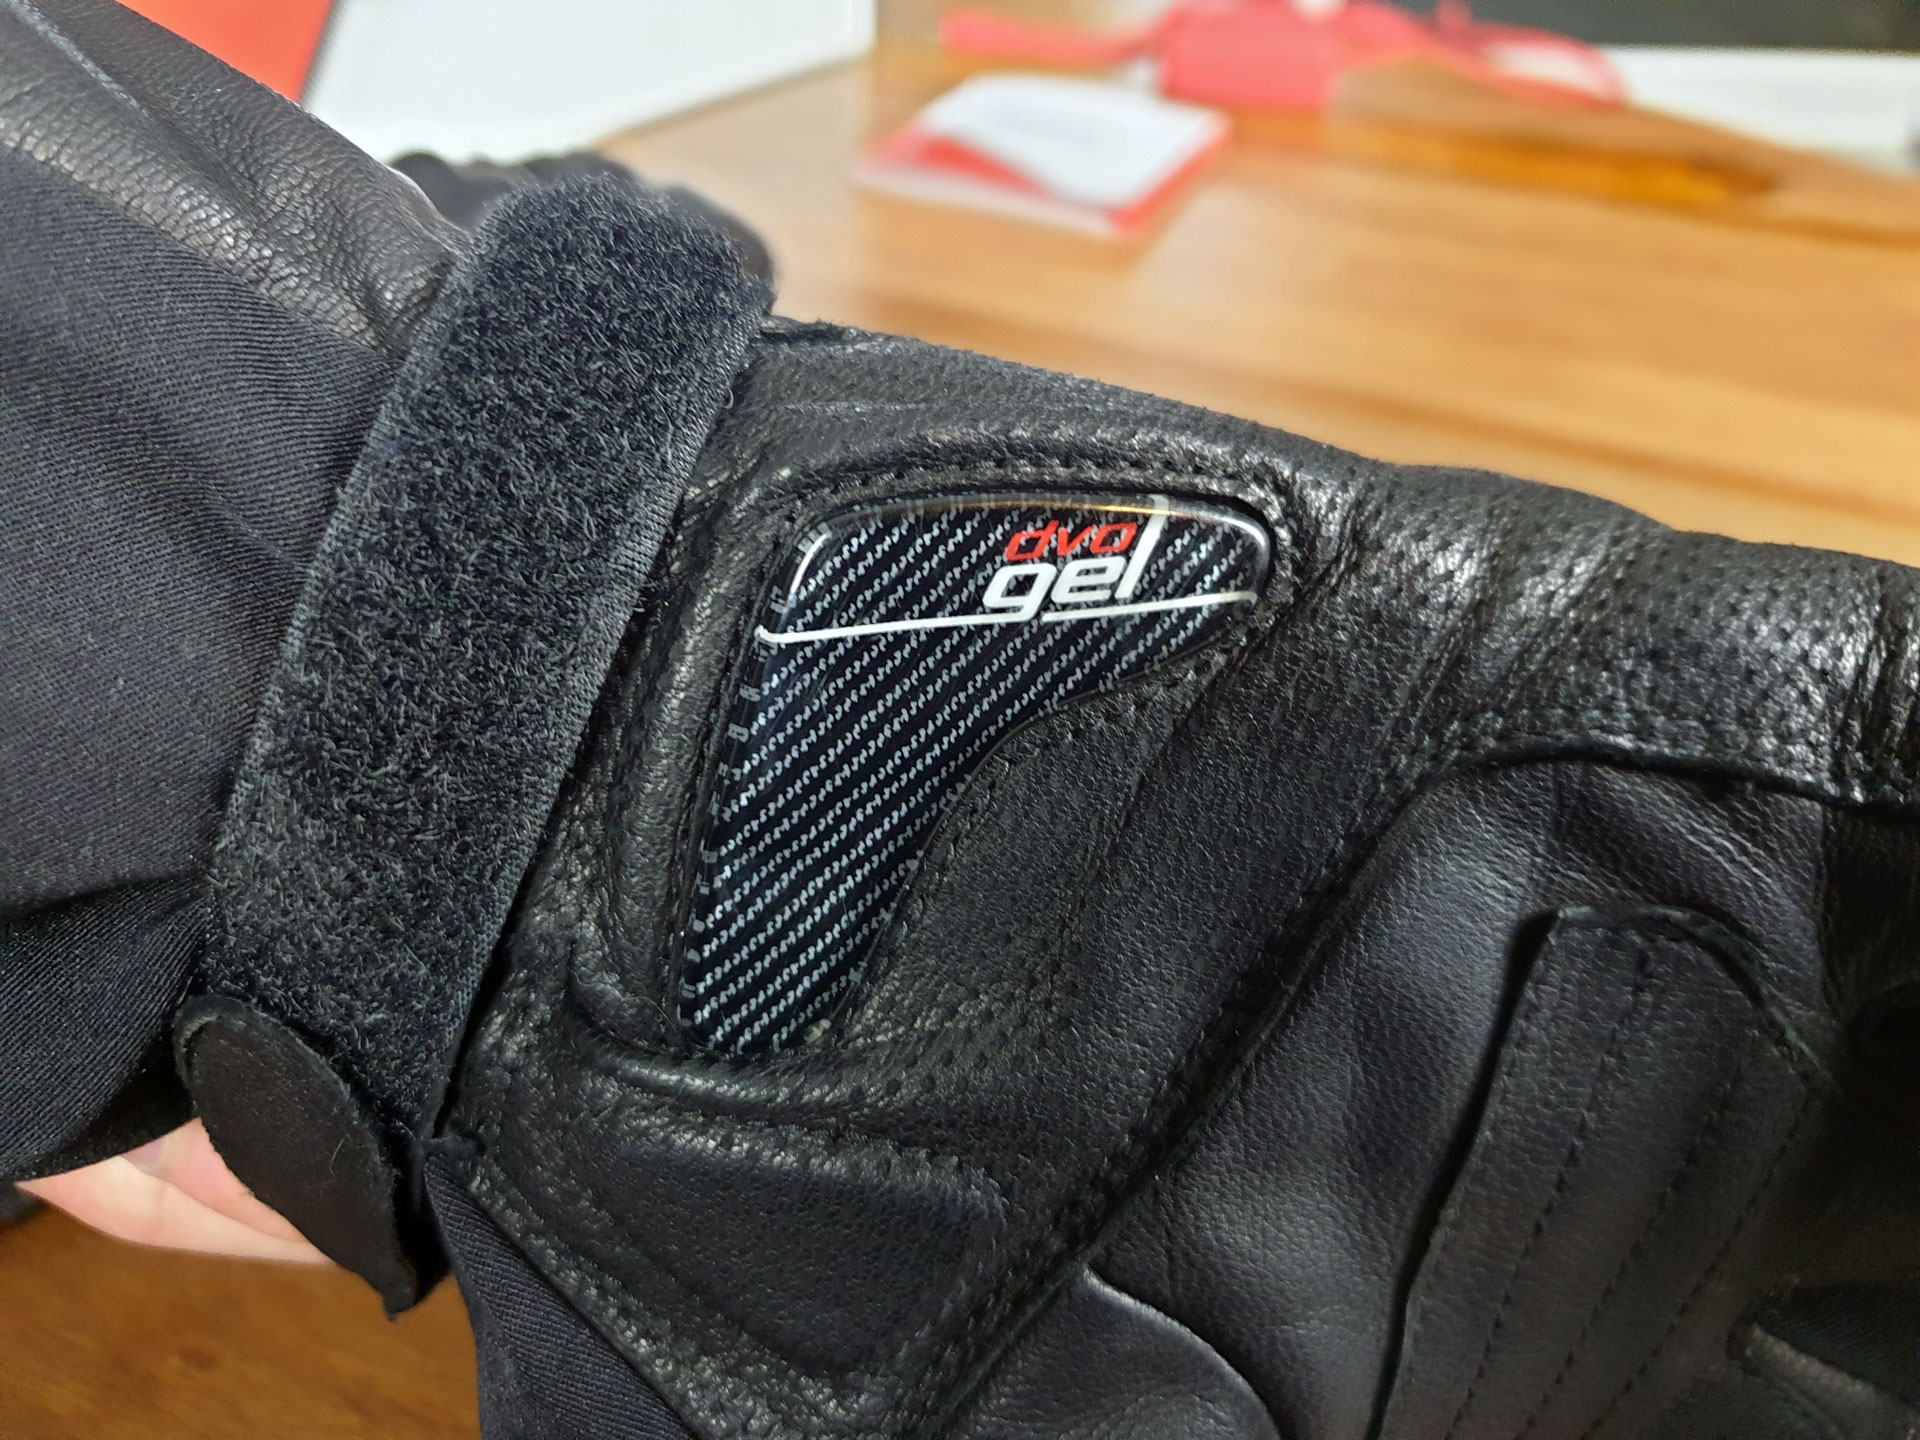 Test des gants hiver chauffants Racer Heat 3 : tranquillement au